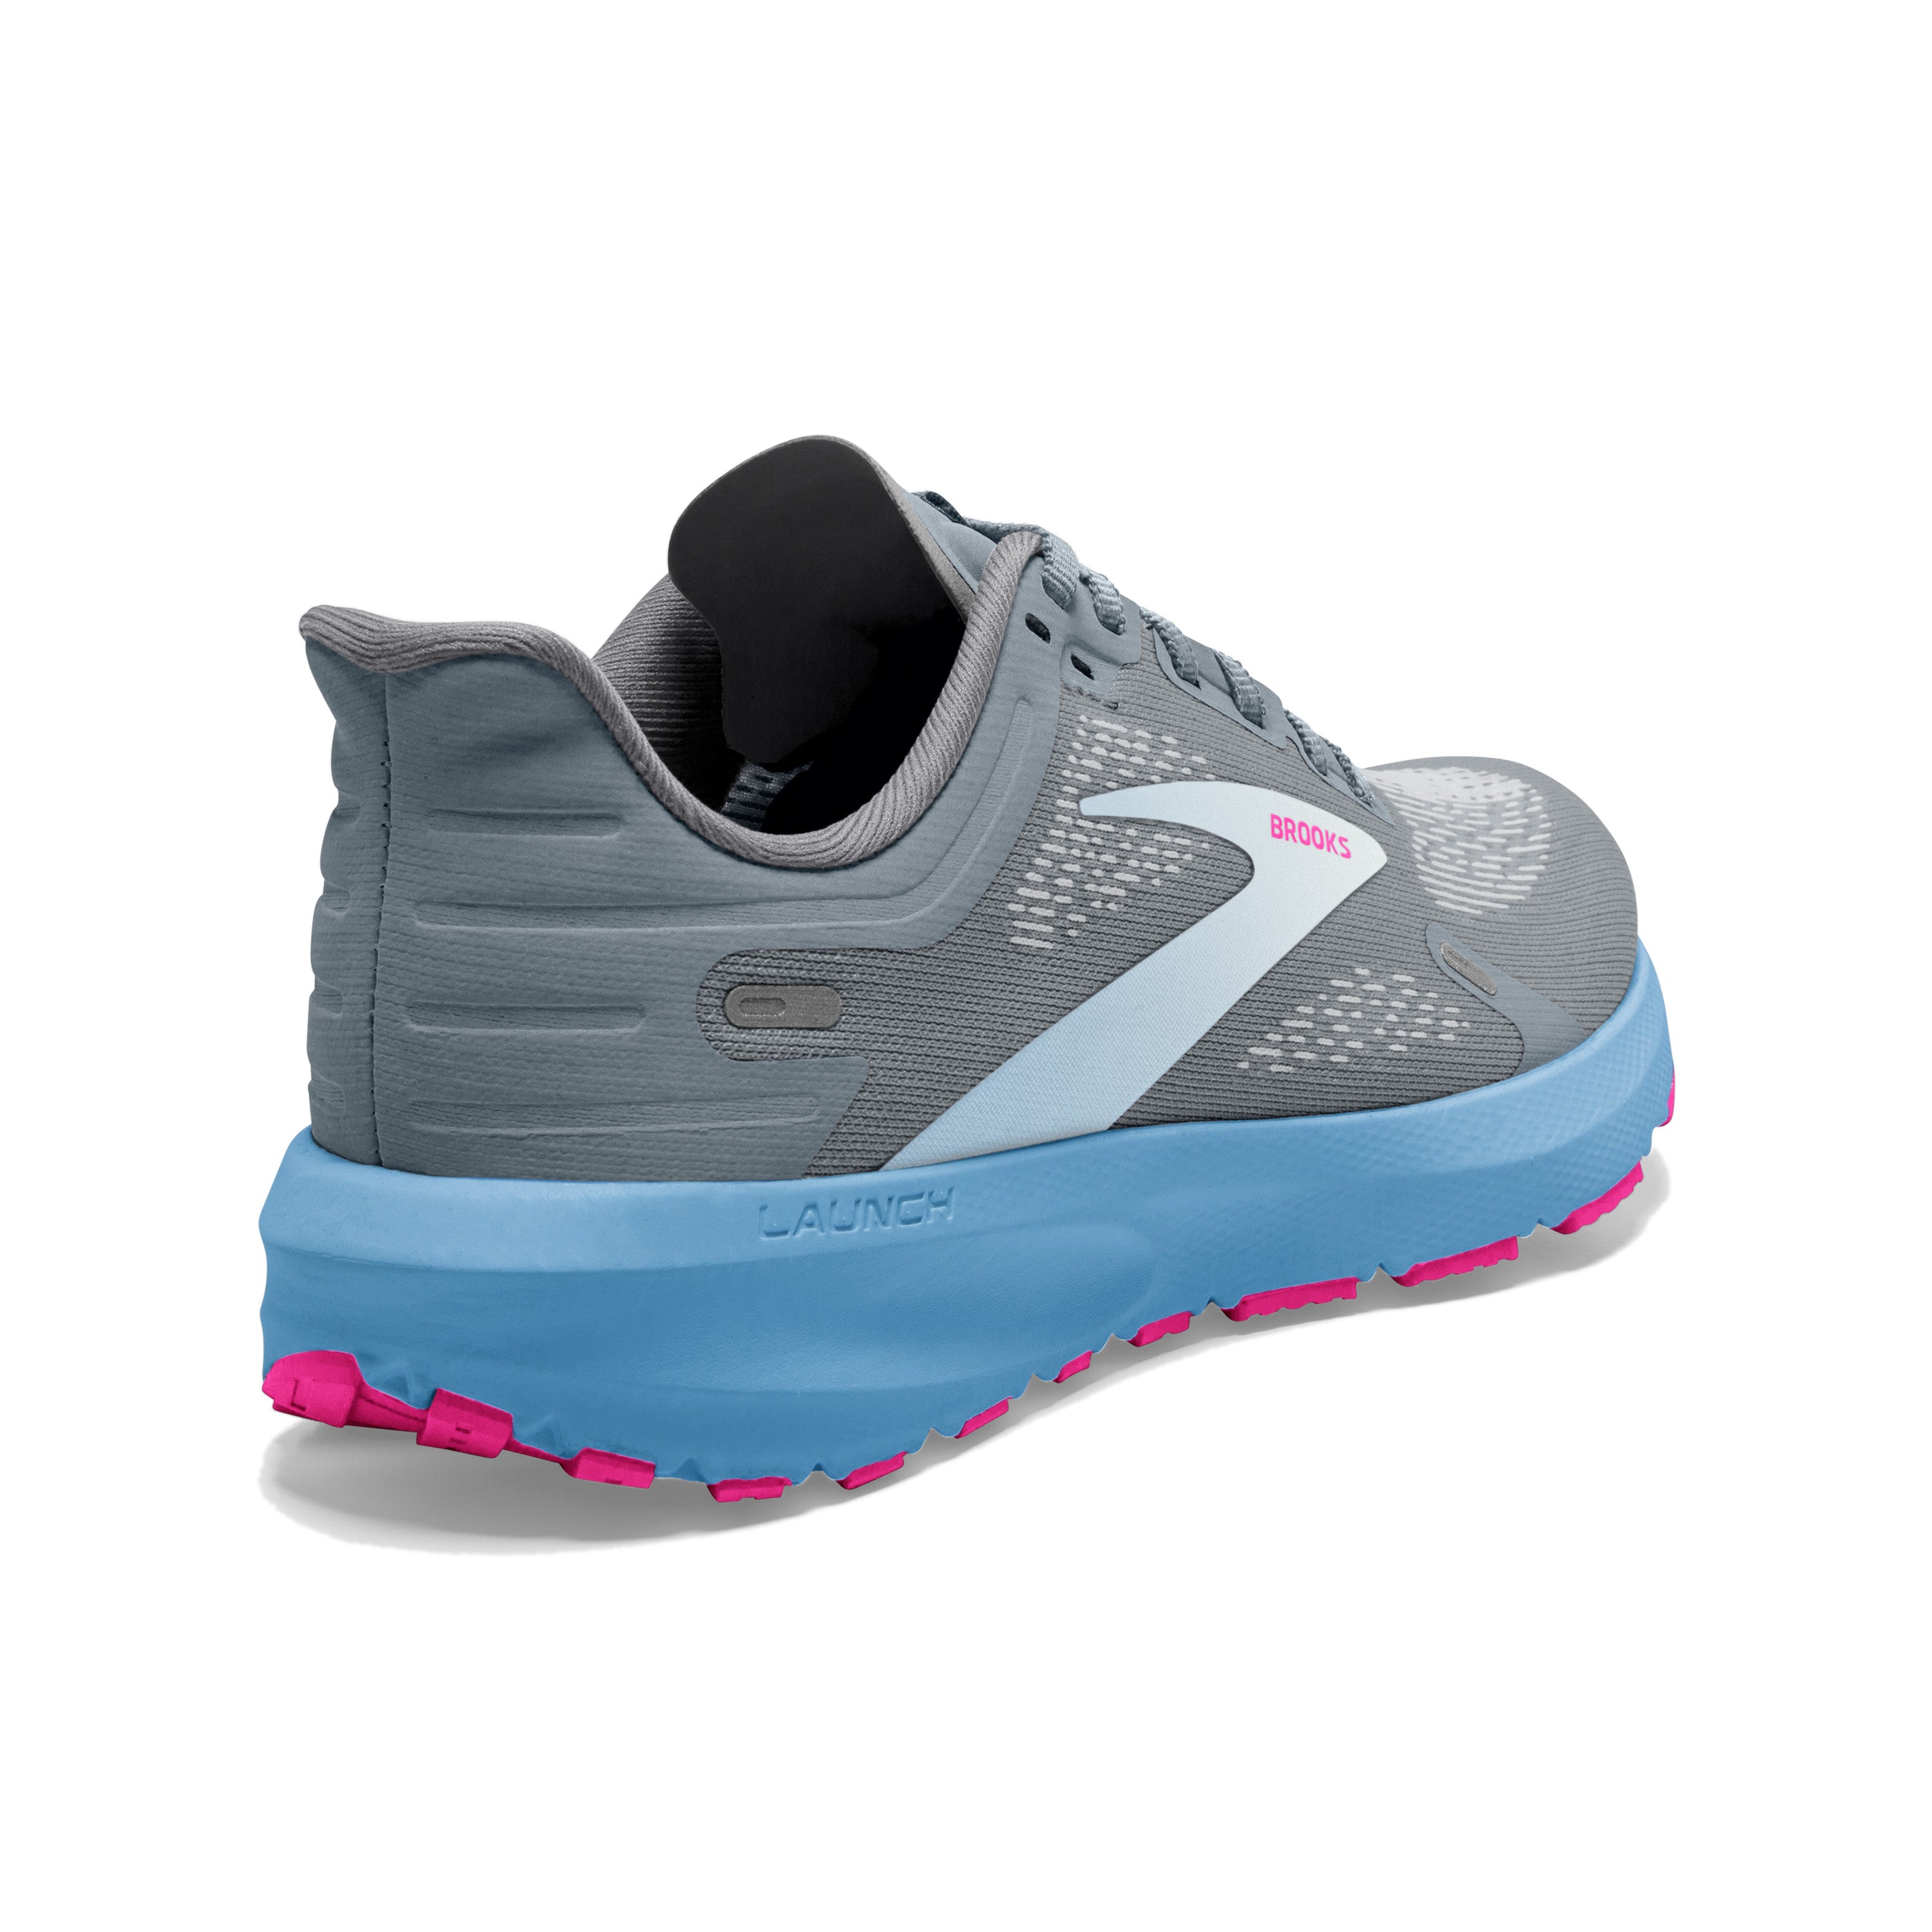 Launch 9 - Women's Road Running Shoes